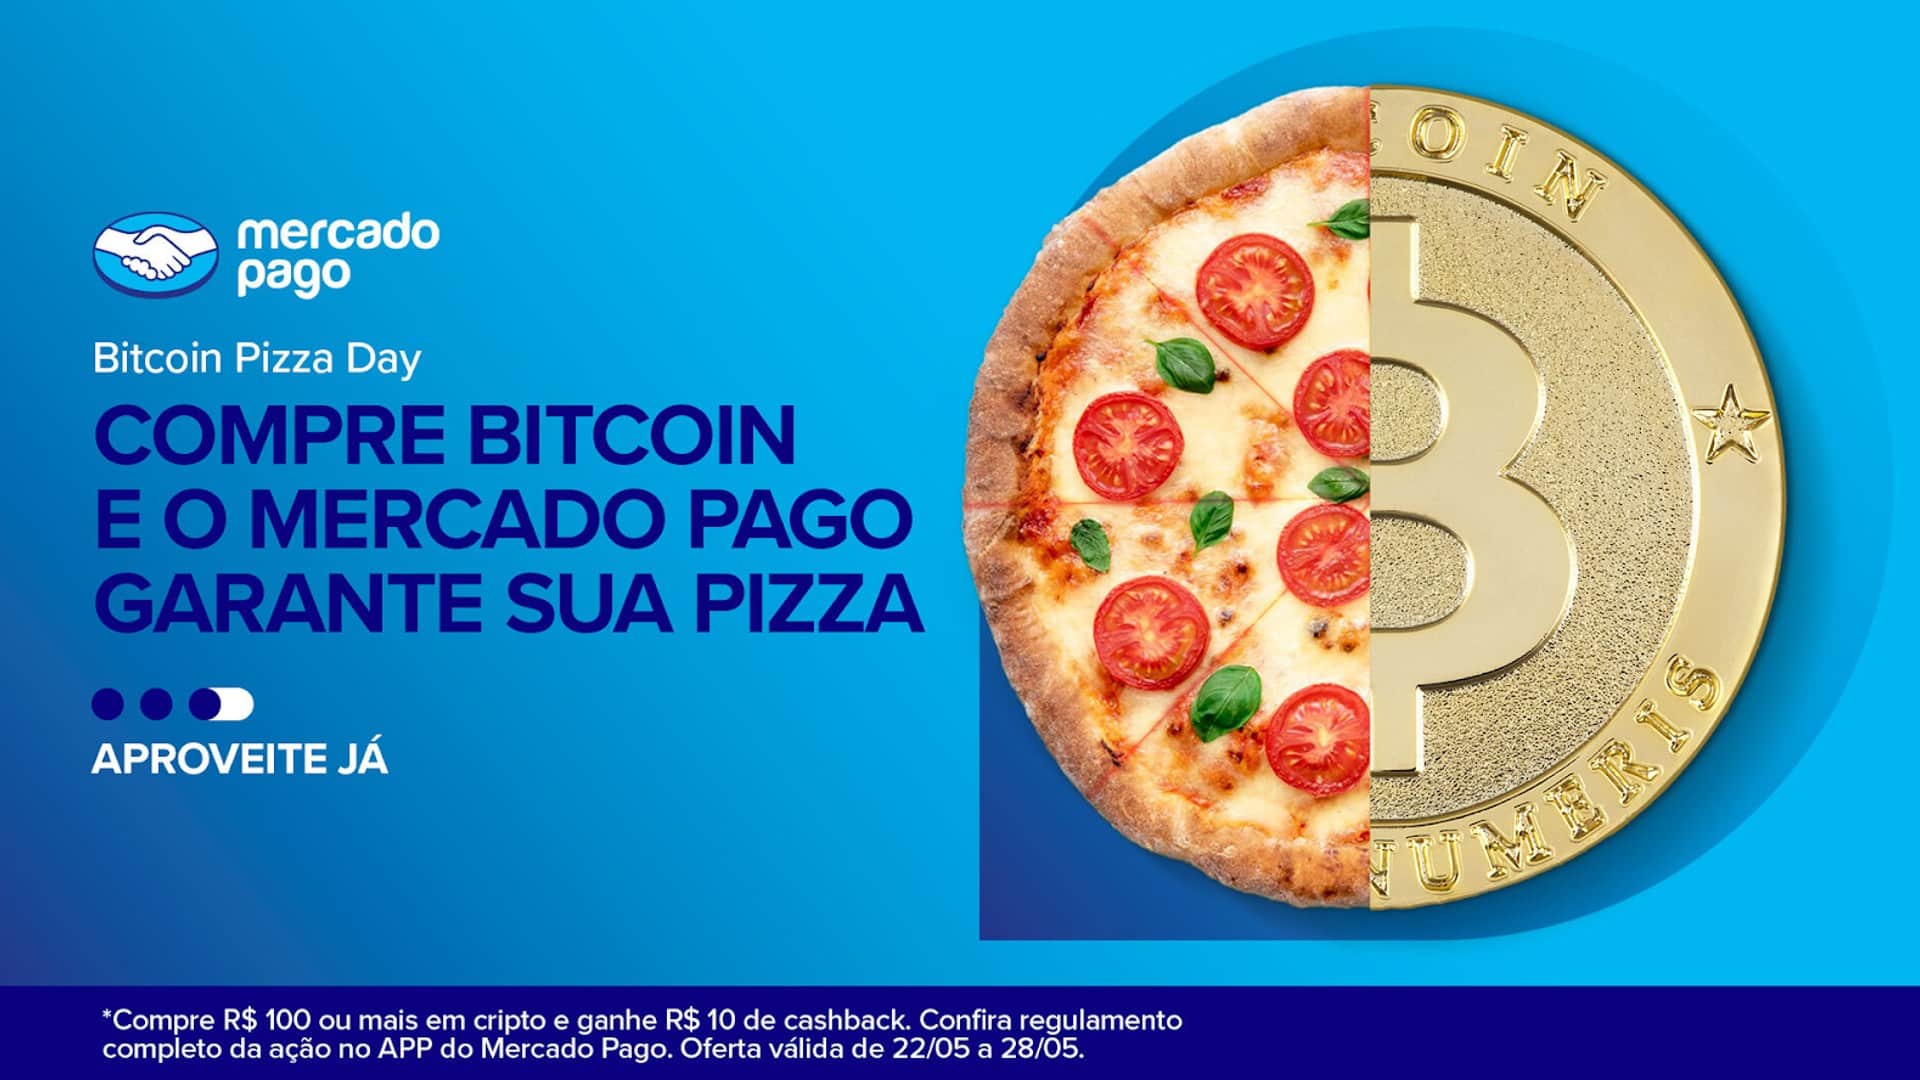 Mercado Pago lança promoção envolvendo pizza day do Bitcoin